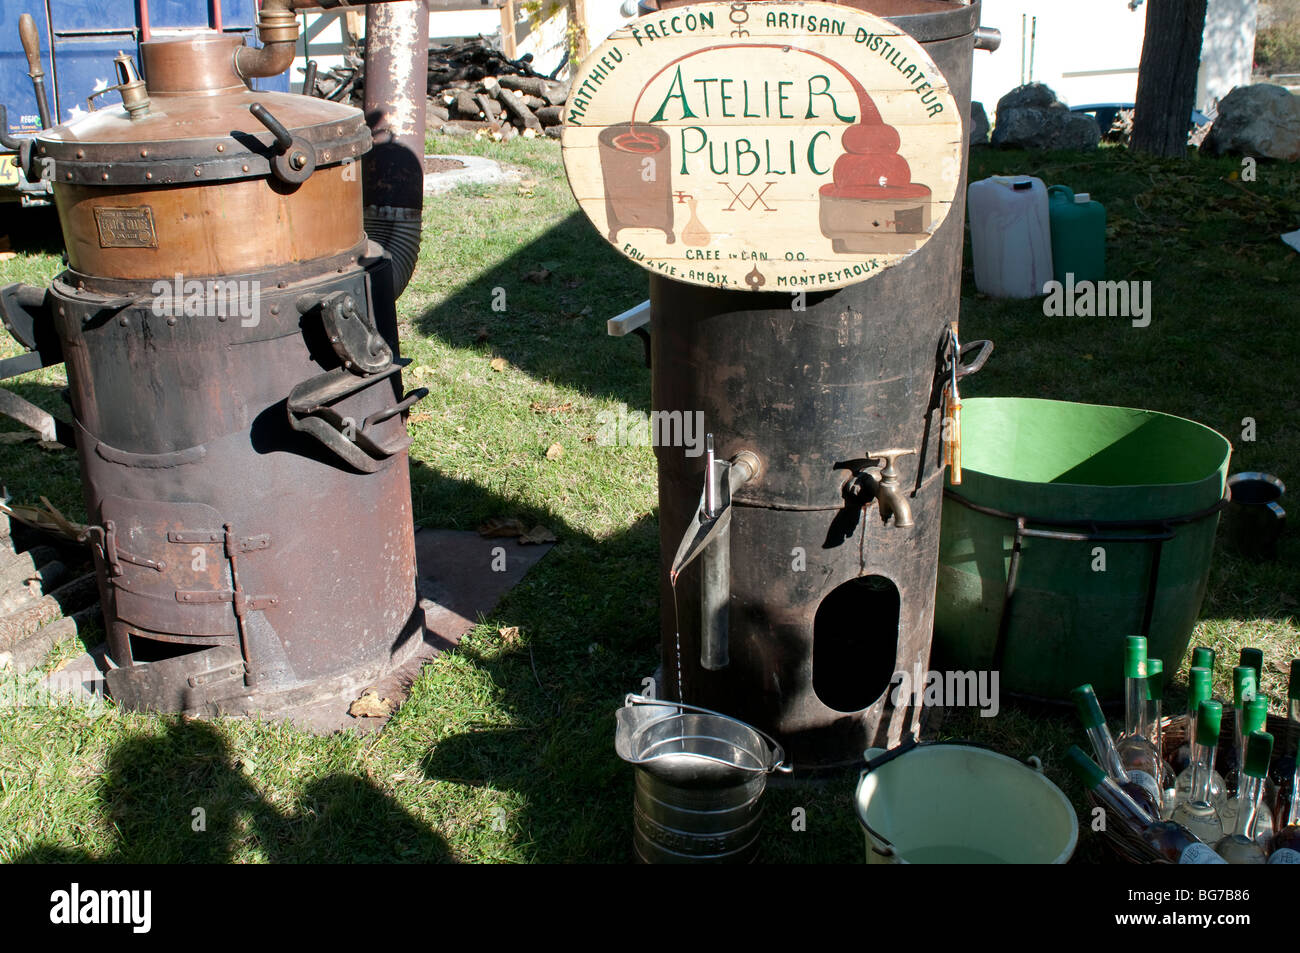 Alkoholmeter in Alkohol in handwerklichen Brennerei schweben. Vertikale  s/w-Foto bei der Destillation von Key West, Key West, Florida, USA  Stockfotografie - Alamy